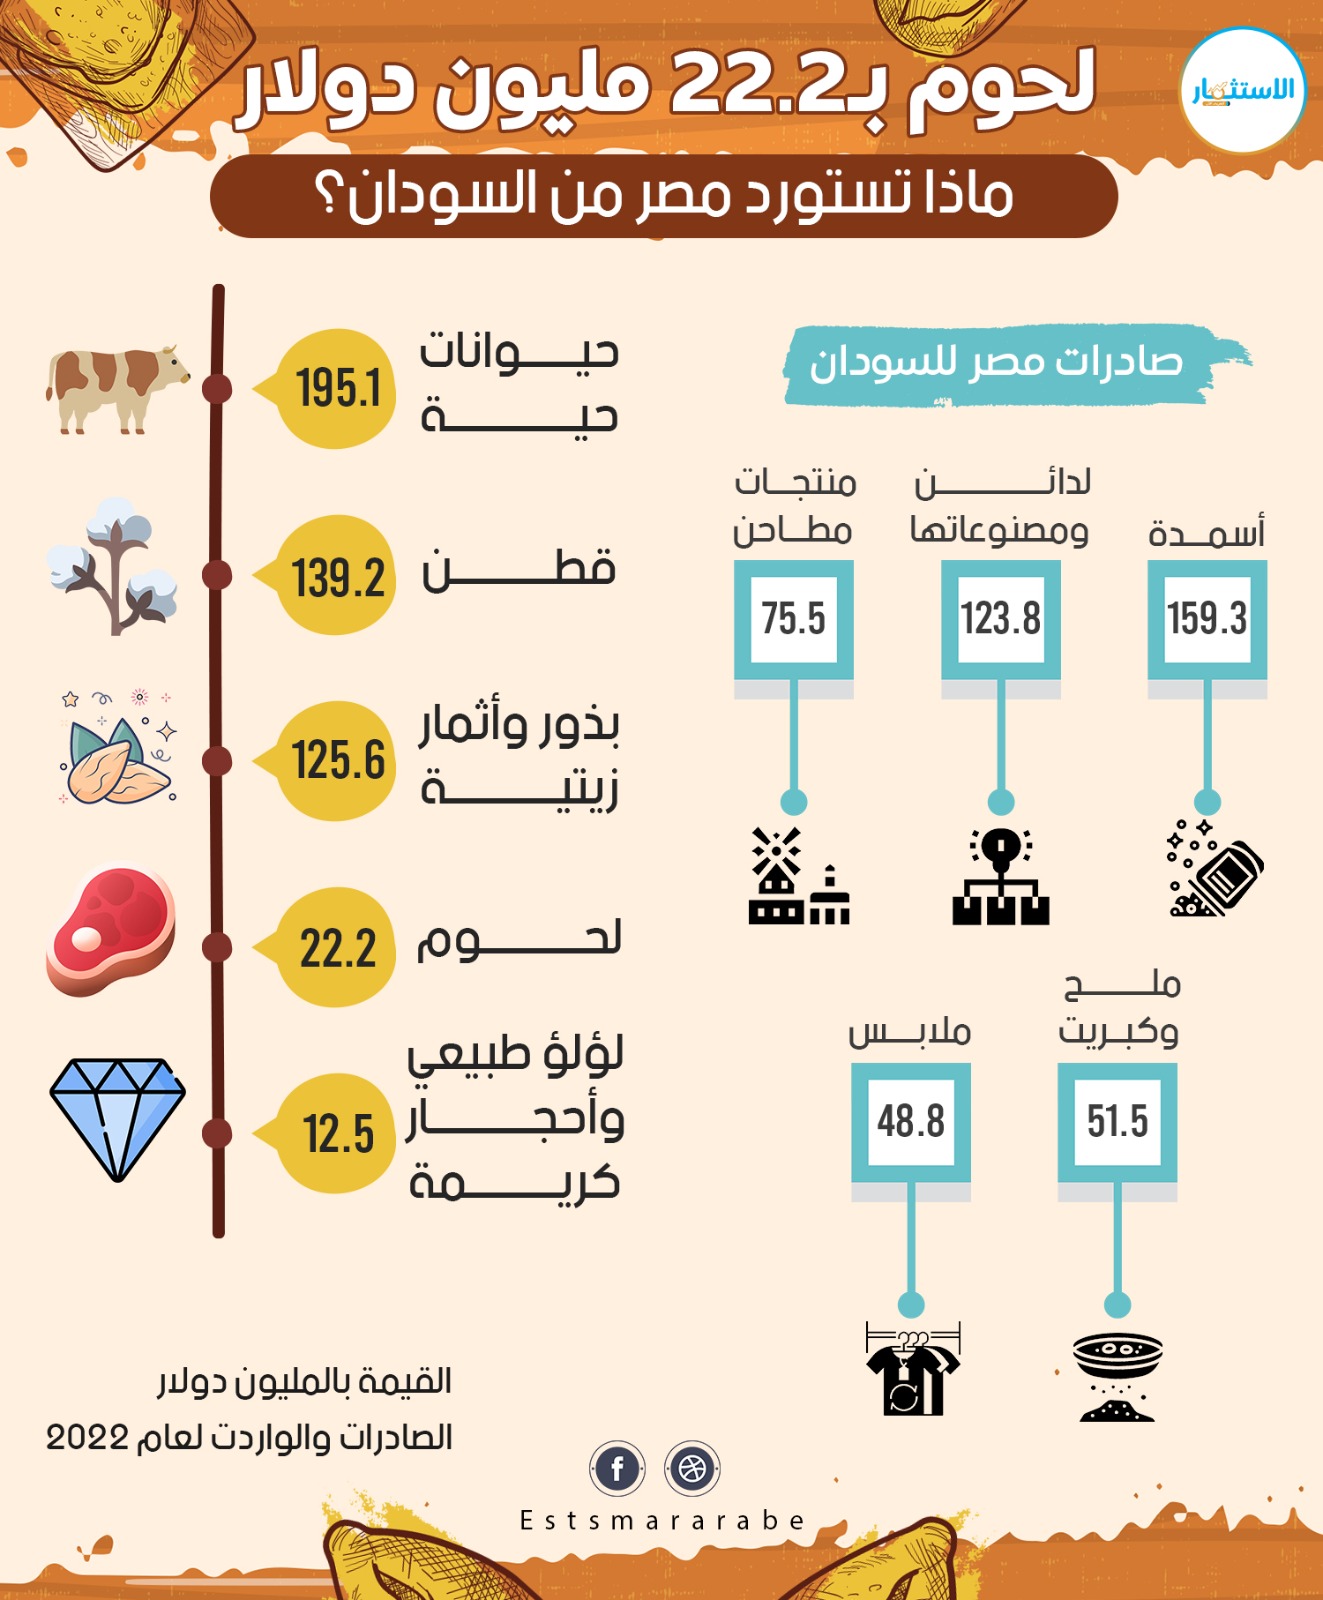 إنفوجرافيك|| كم تستورد وتصدر مصر لحوم من السودان؟